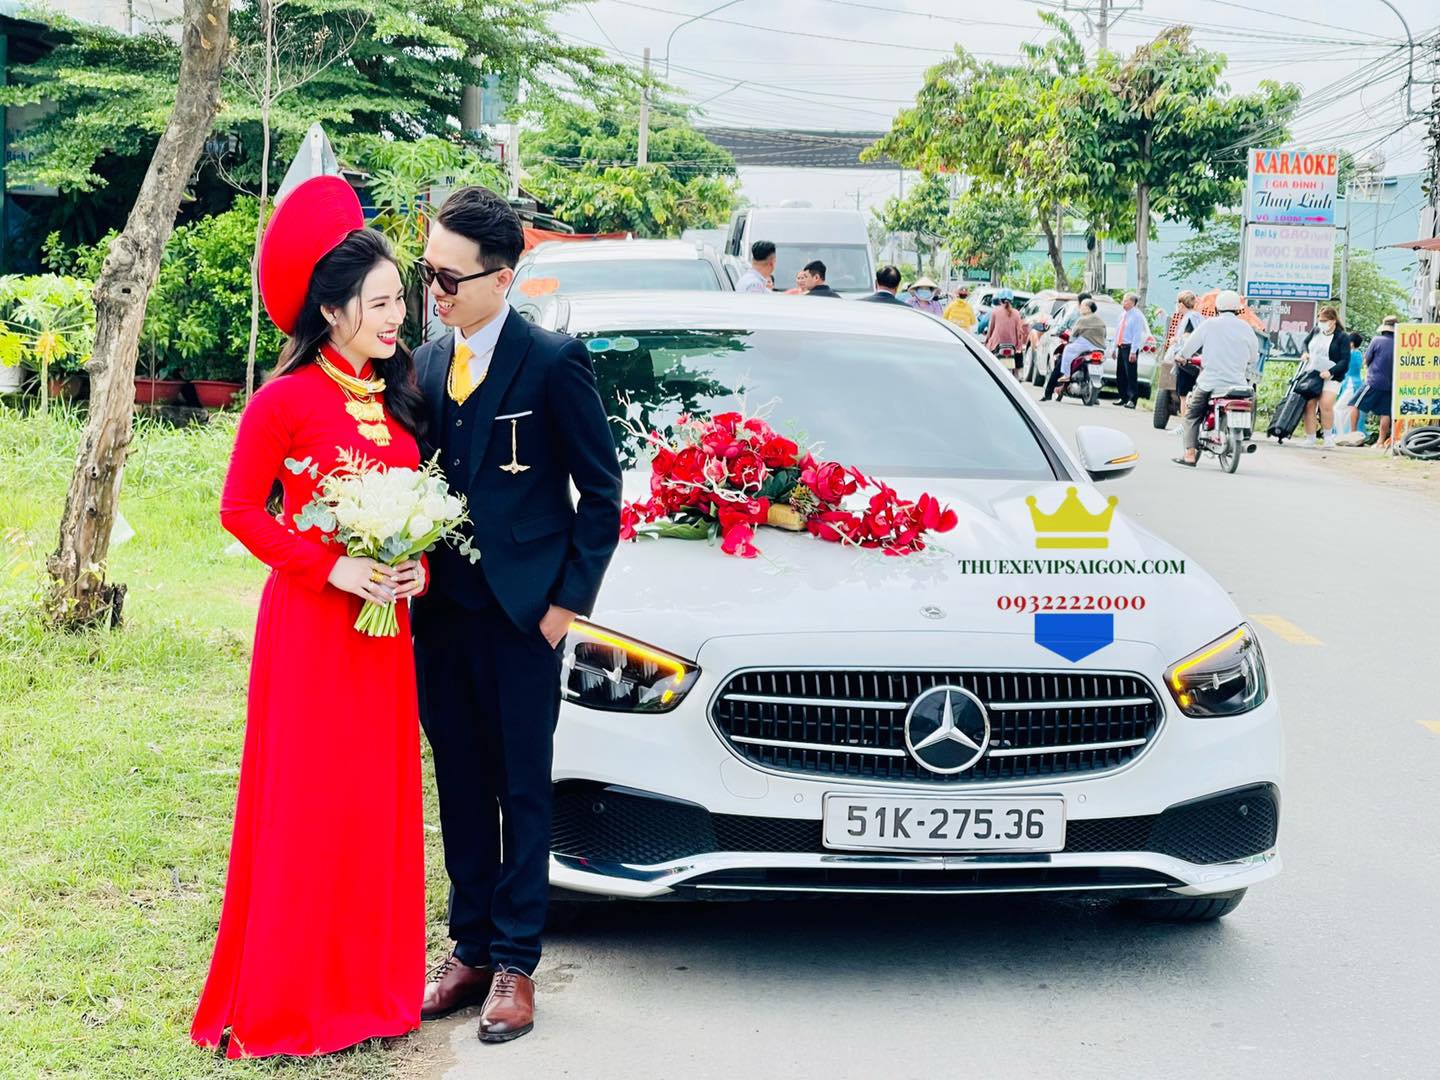 Thuexevipsaigon cho thuê xe cưới Mercedes ngày 9/7/2022